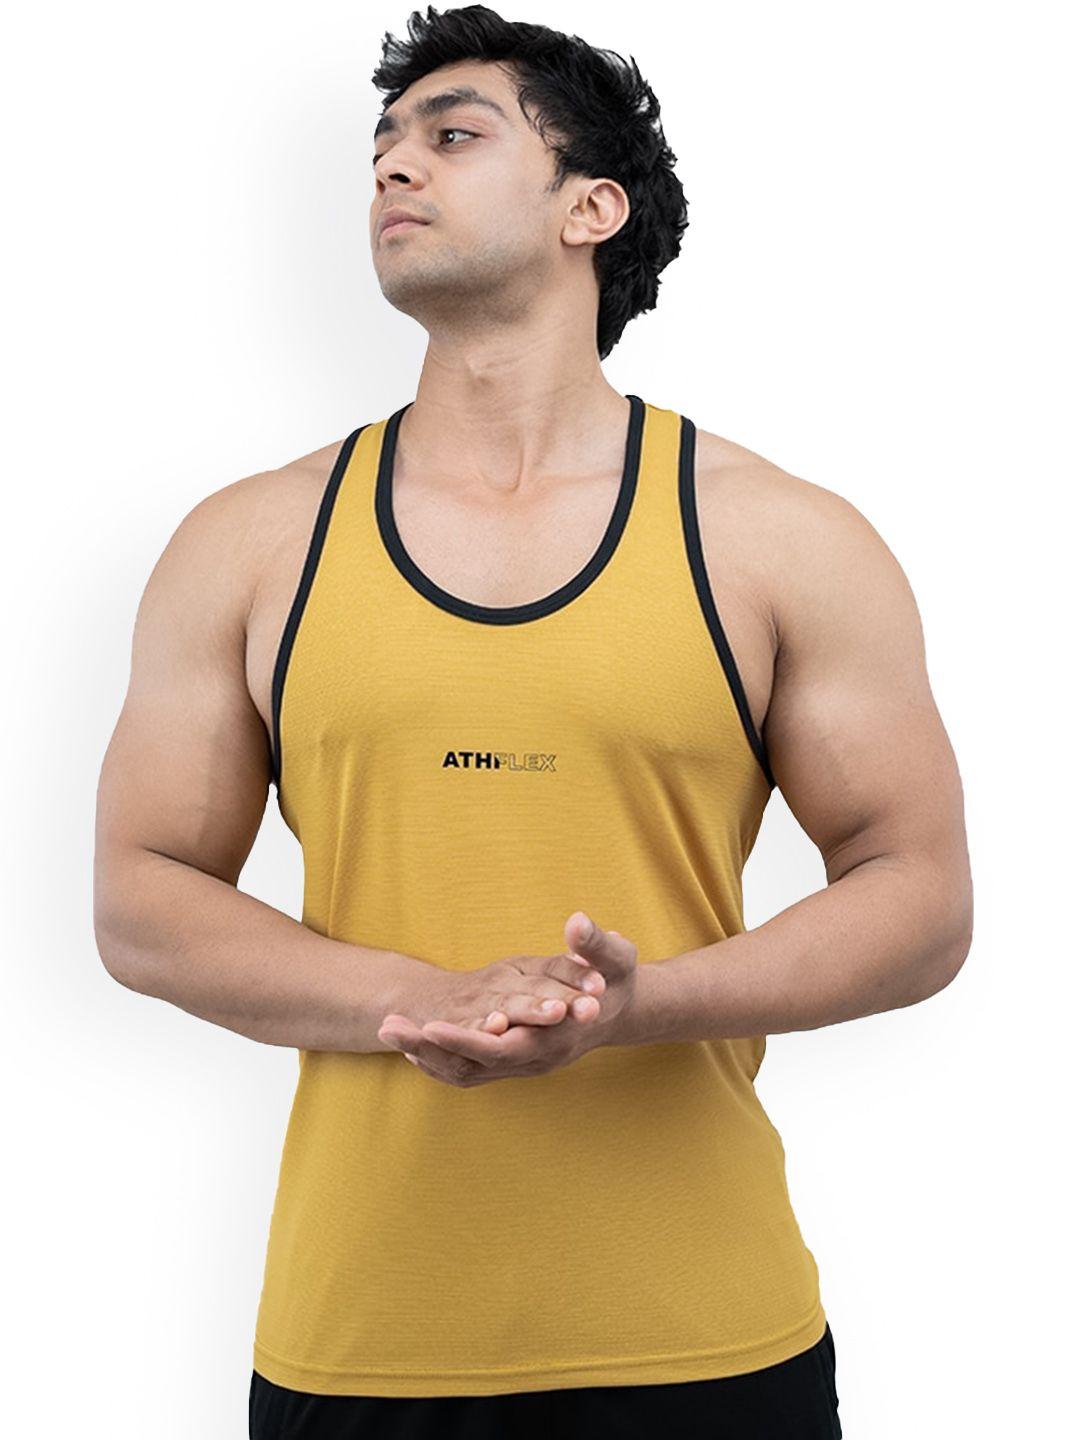 athflex sleeveless innerwear gym vest